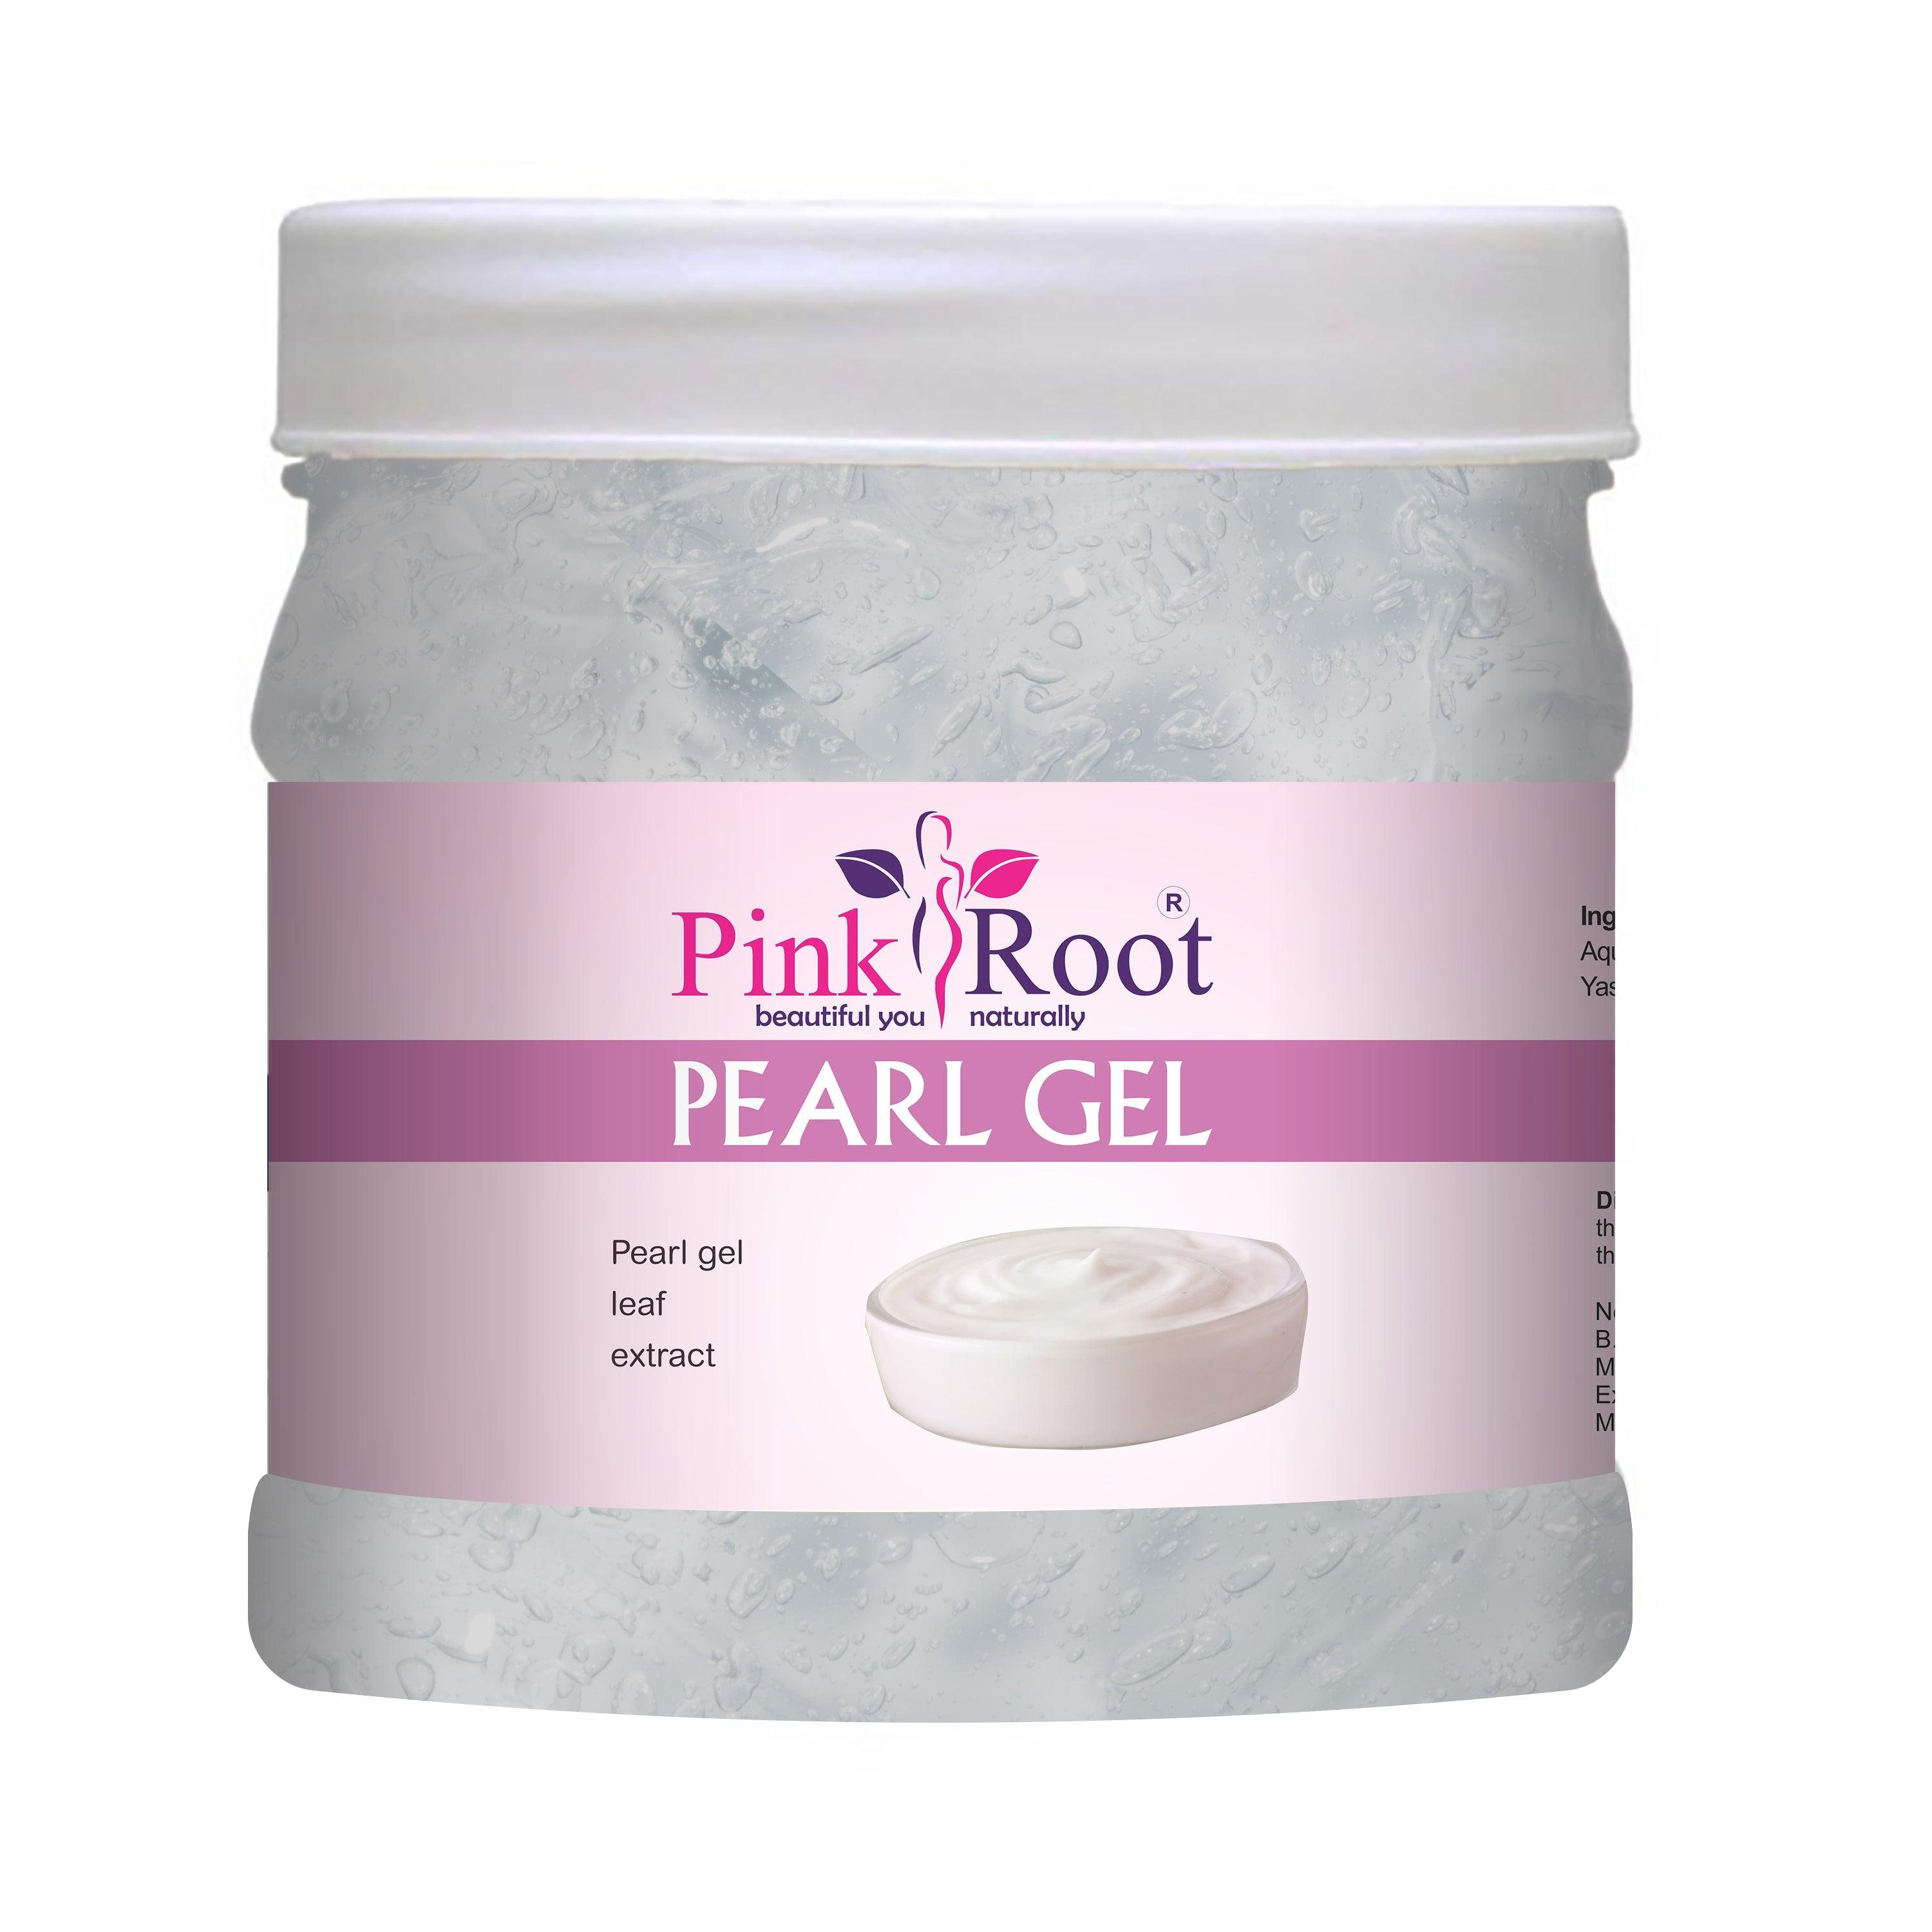 Pearl Gel, Pearl Gel leaf Extract 500gm - Pink Root